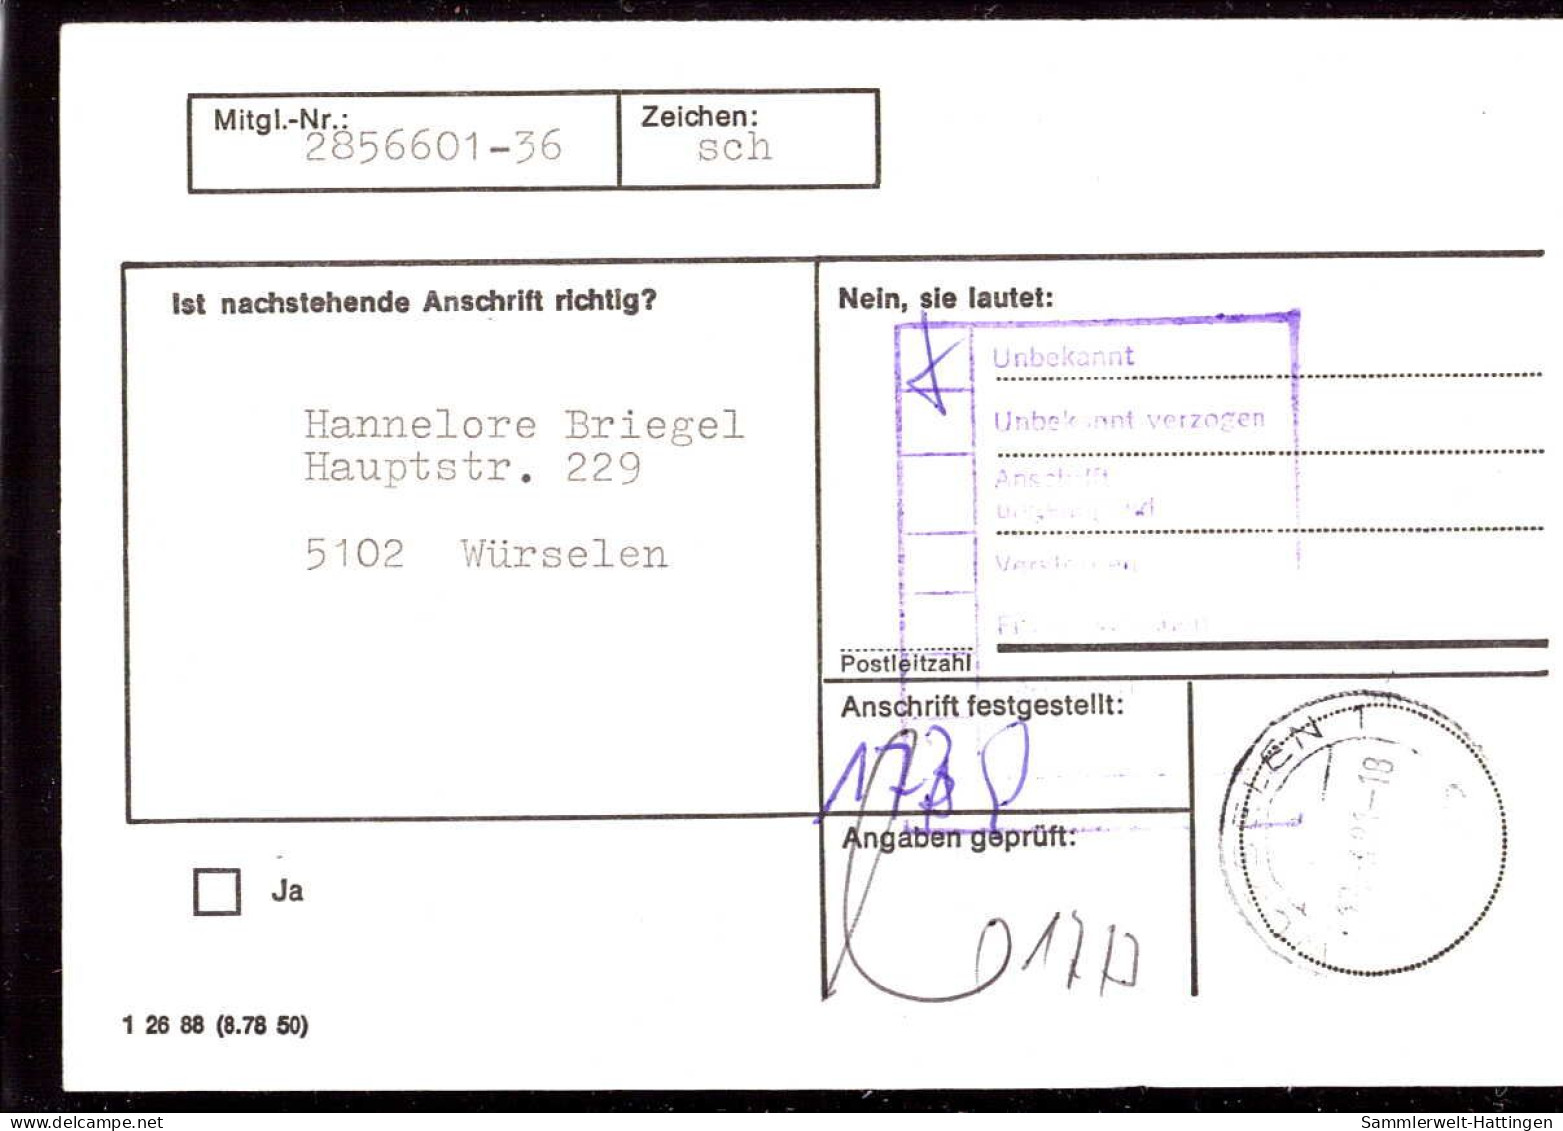 604272 | Seltene Anschriftenprüfung Der Hamburg - Mannheimer Versicherung, 2000 Jahre Weinbau  | Aachen (W - 5100), -, - - Lettres & Documents